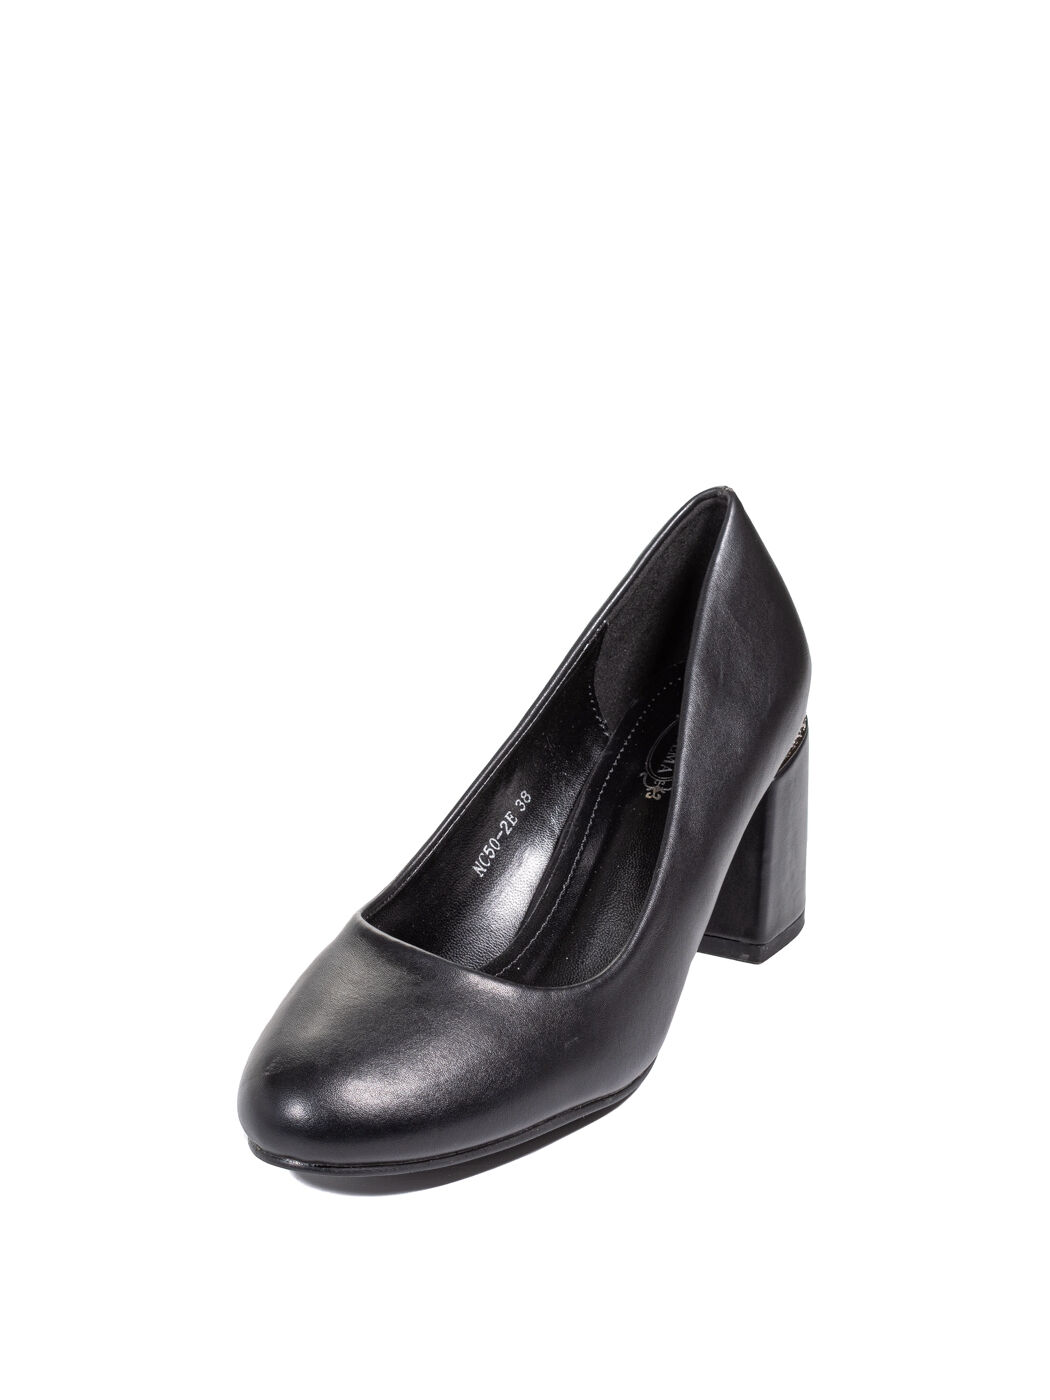 Туфли женские черные экокожа каблук устойчивый демисезон EM вид 1